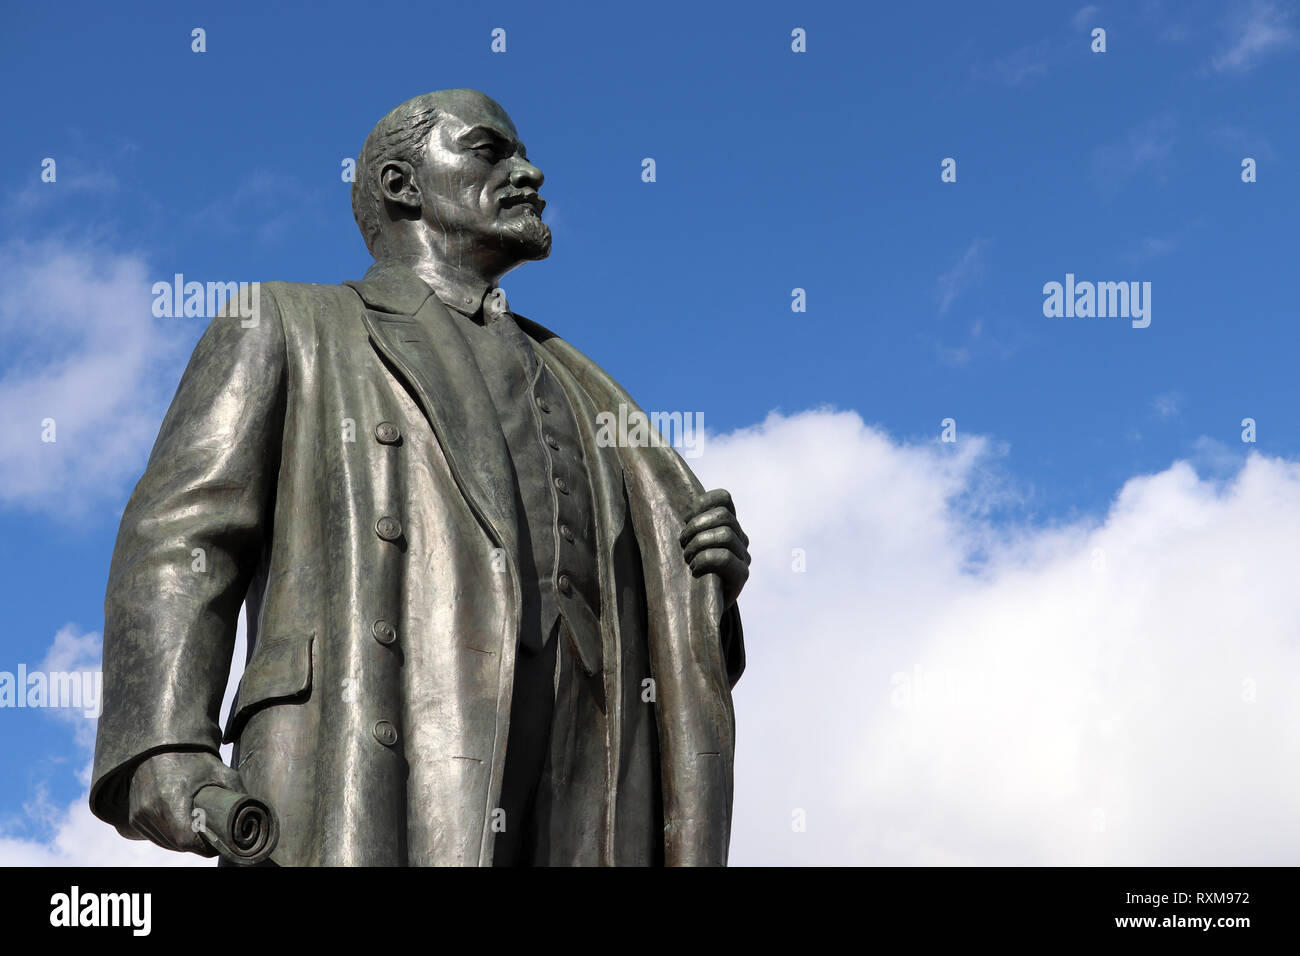 Denkmal für Lenin, der Führer der russischen Proletariat gegen den blauen Himmel mit weißen Wolken Stockfoto